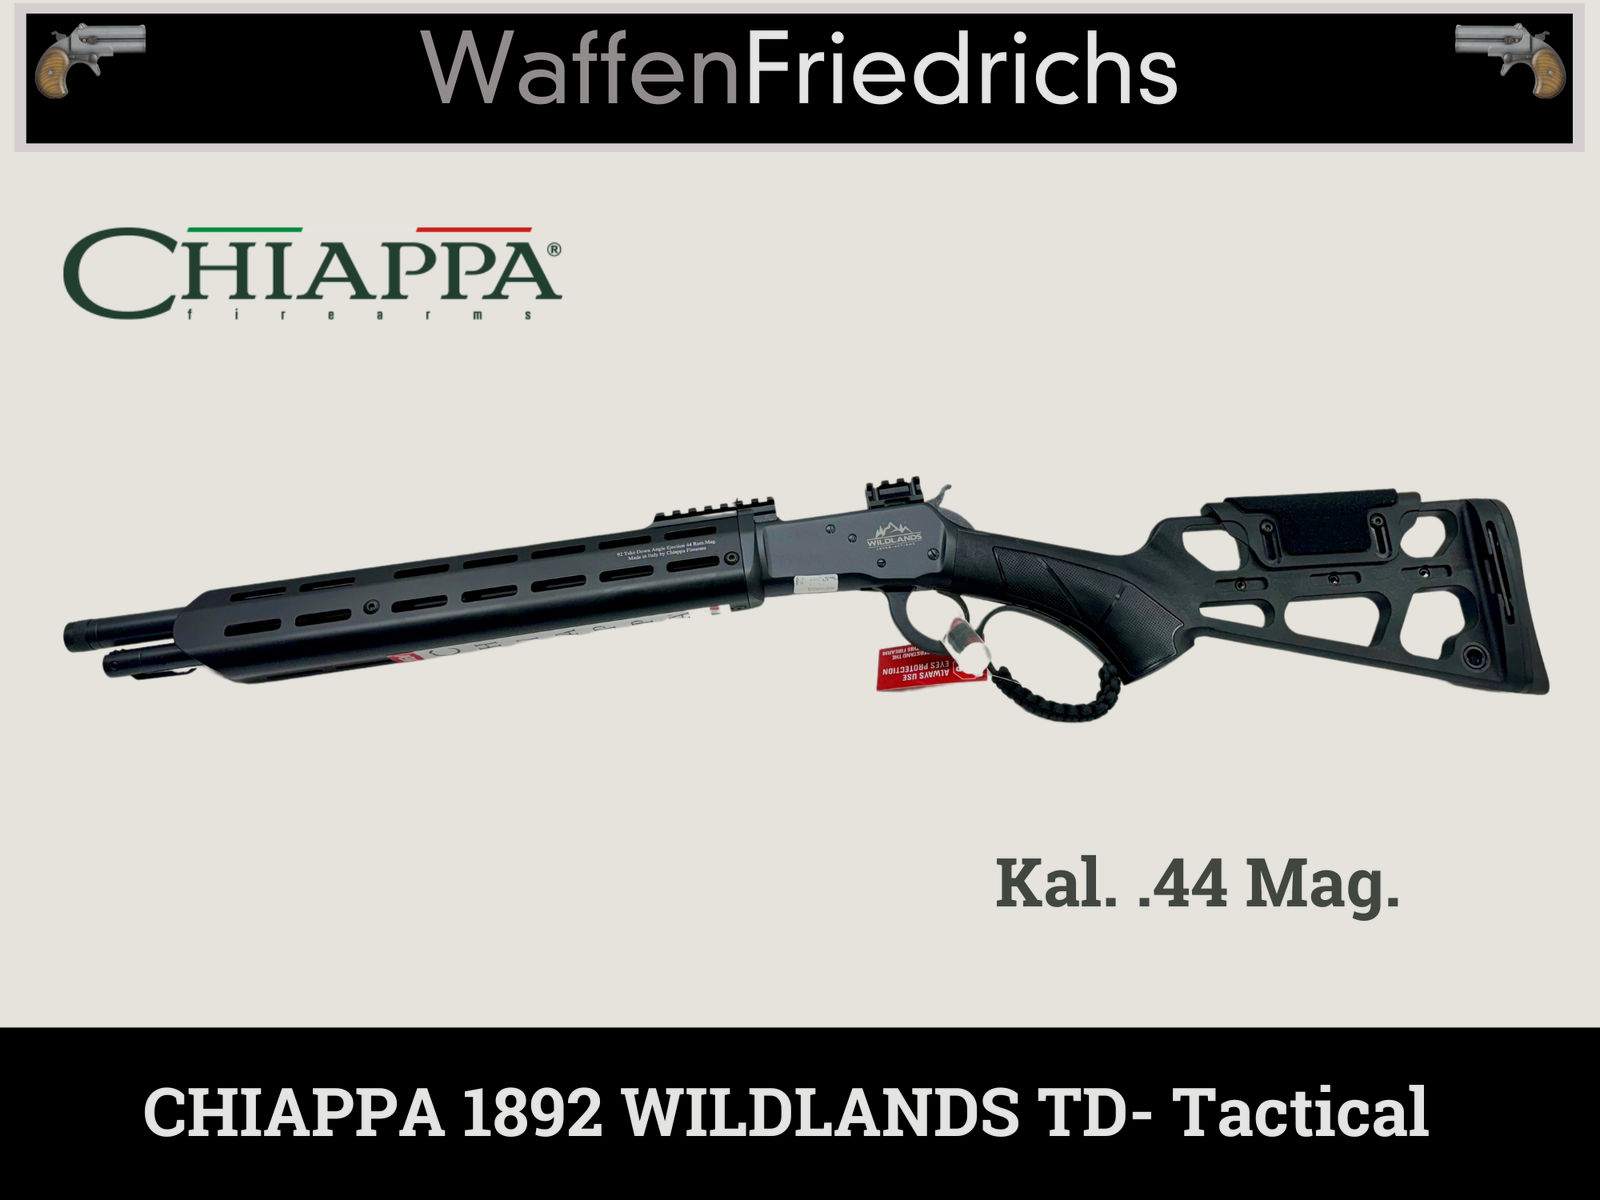 CHIAPPA 1892 Wildlands TD TACTICAL 16" BRANDNEU! | UHR Unterhebelrepetierbüchse | WaffenFriedrichs